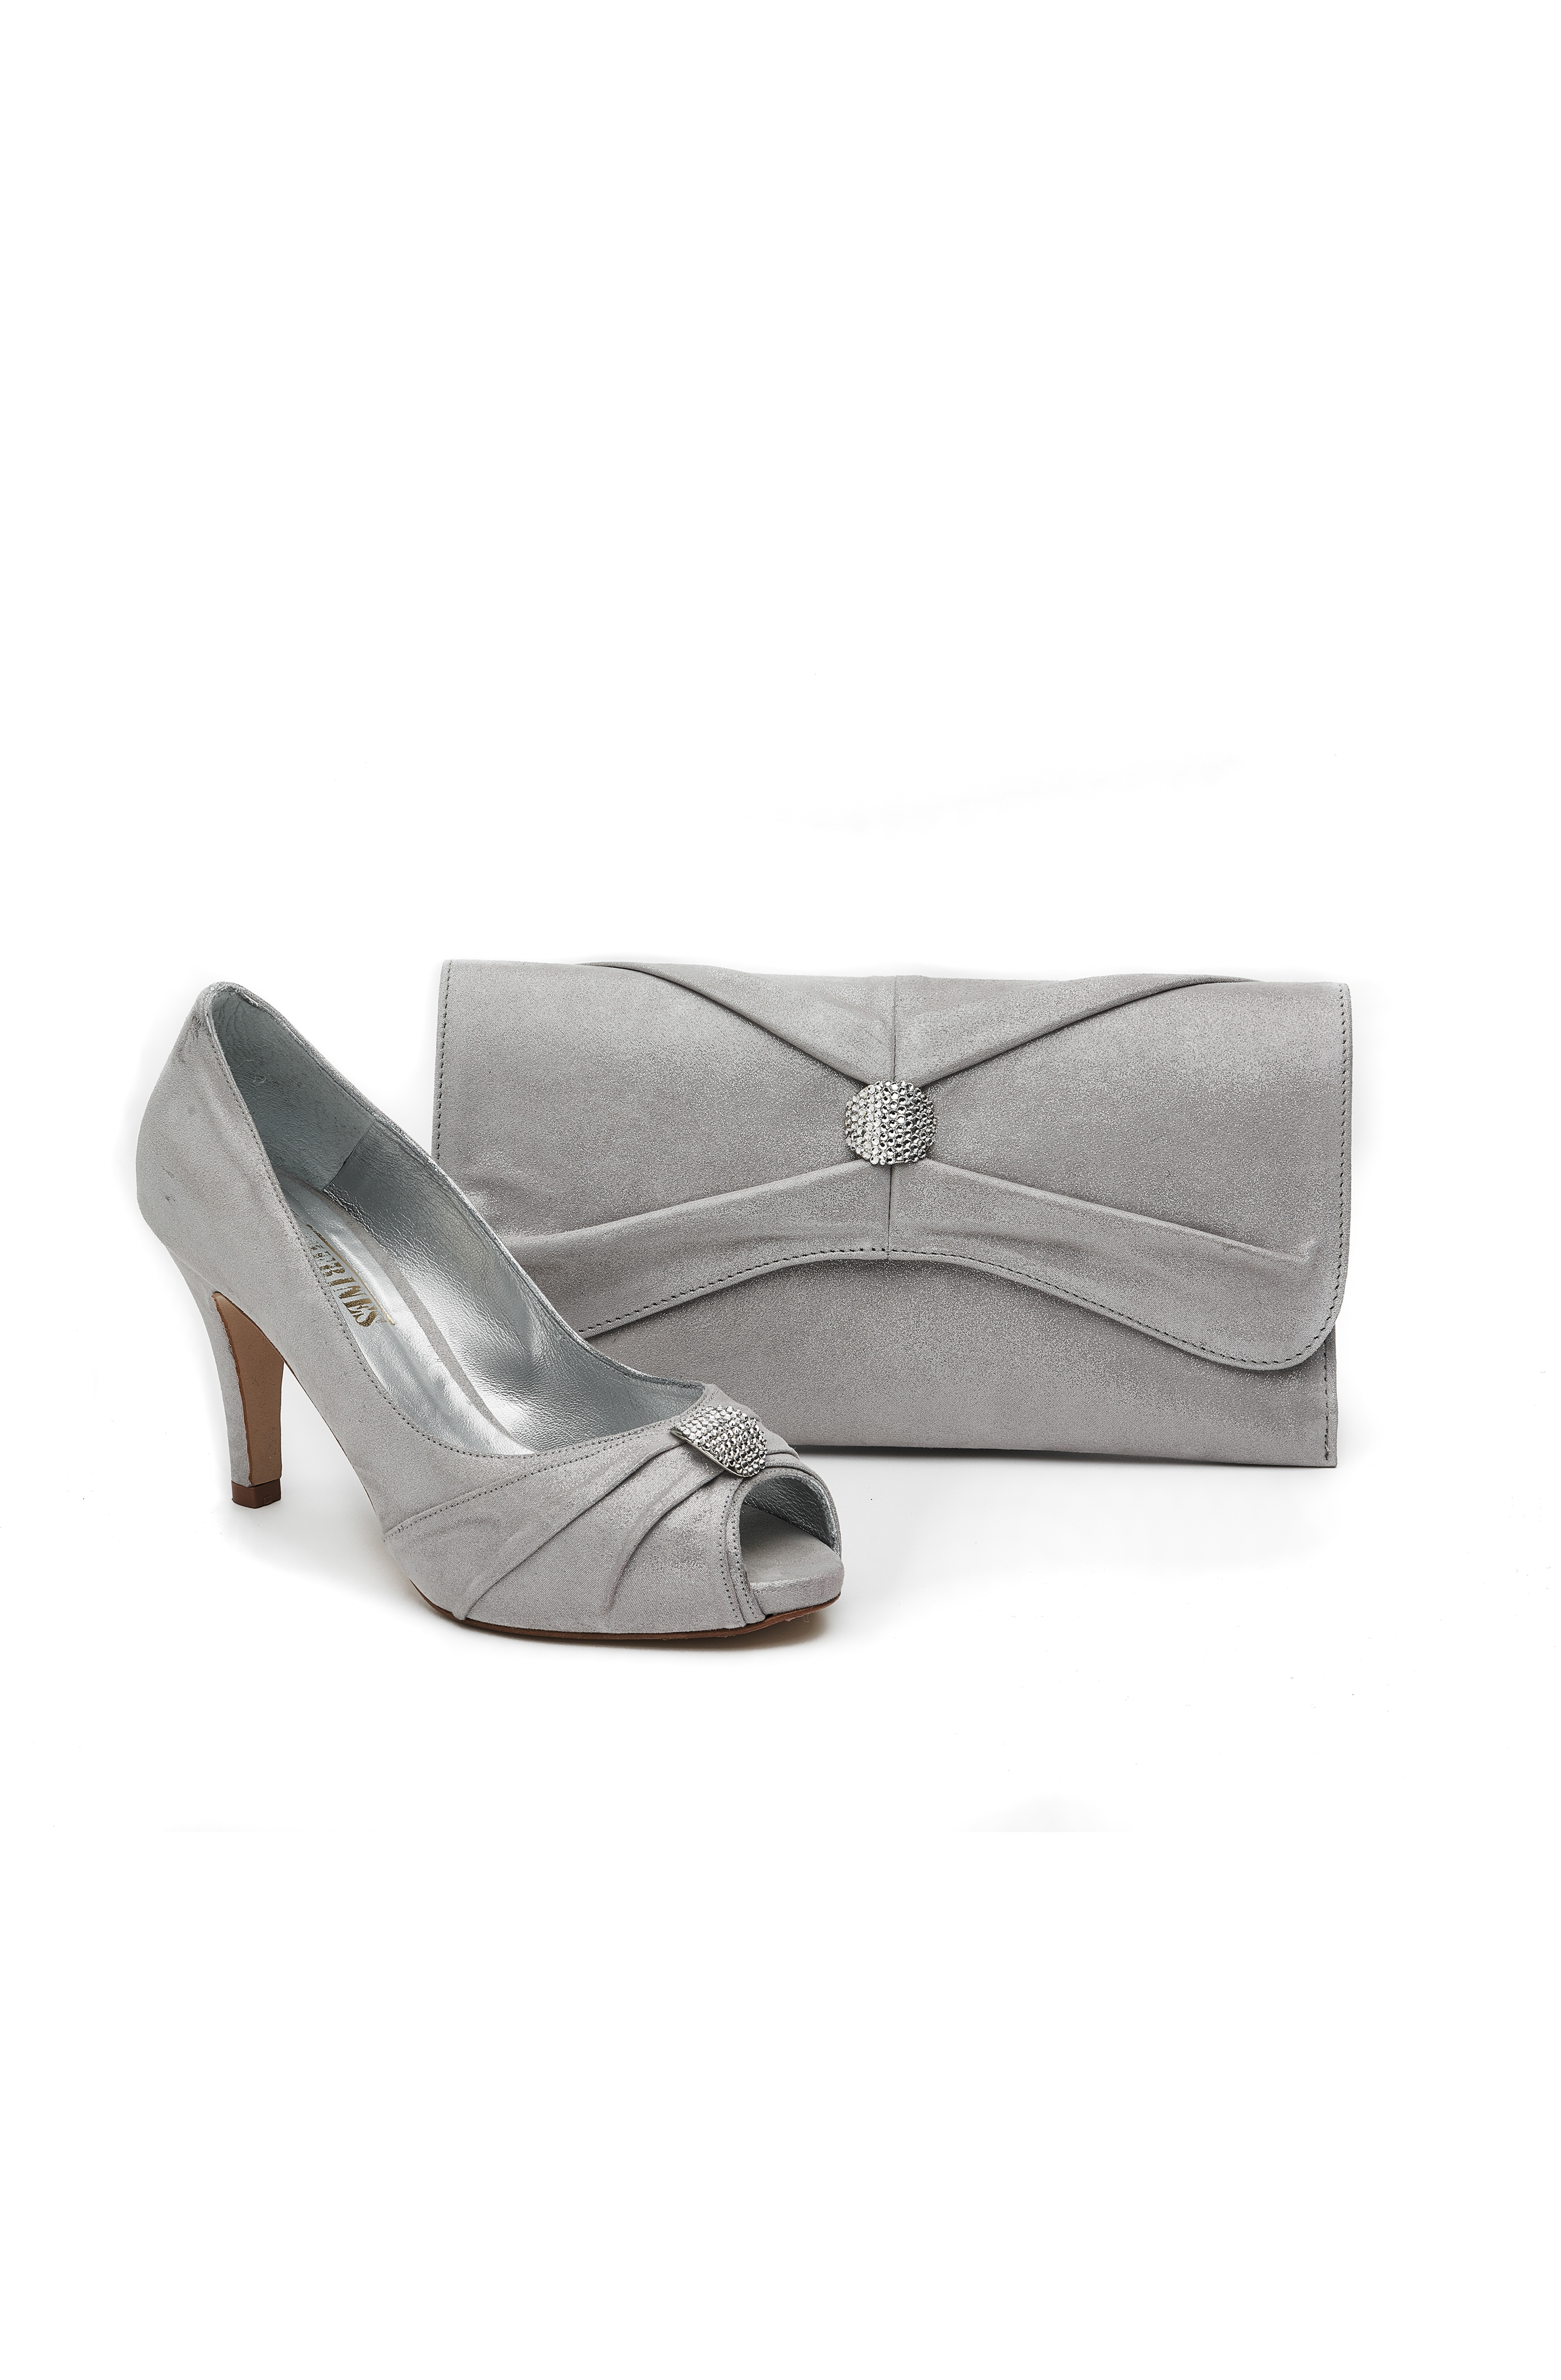 silver medium heel shoes